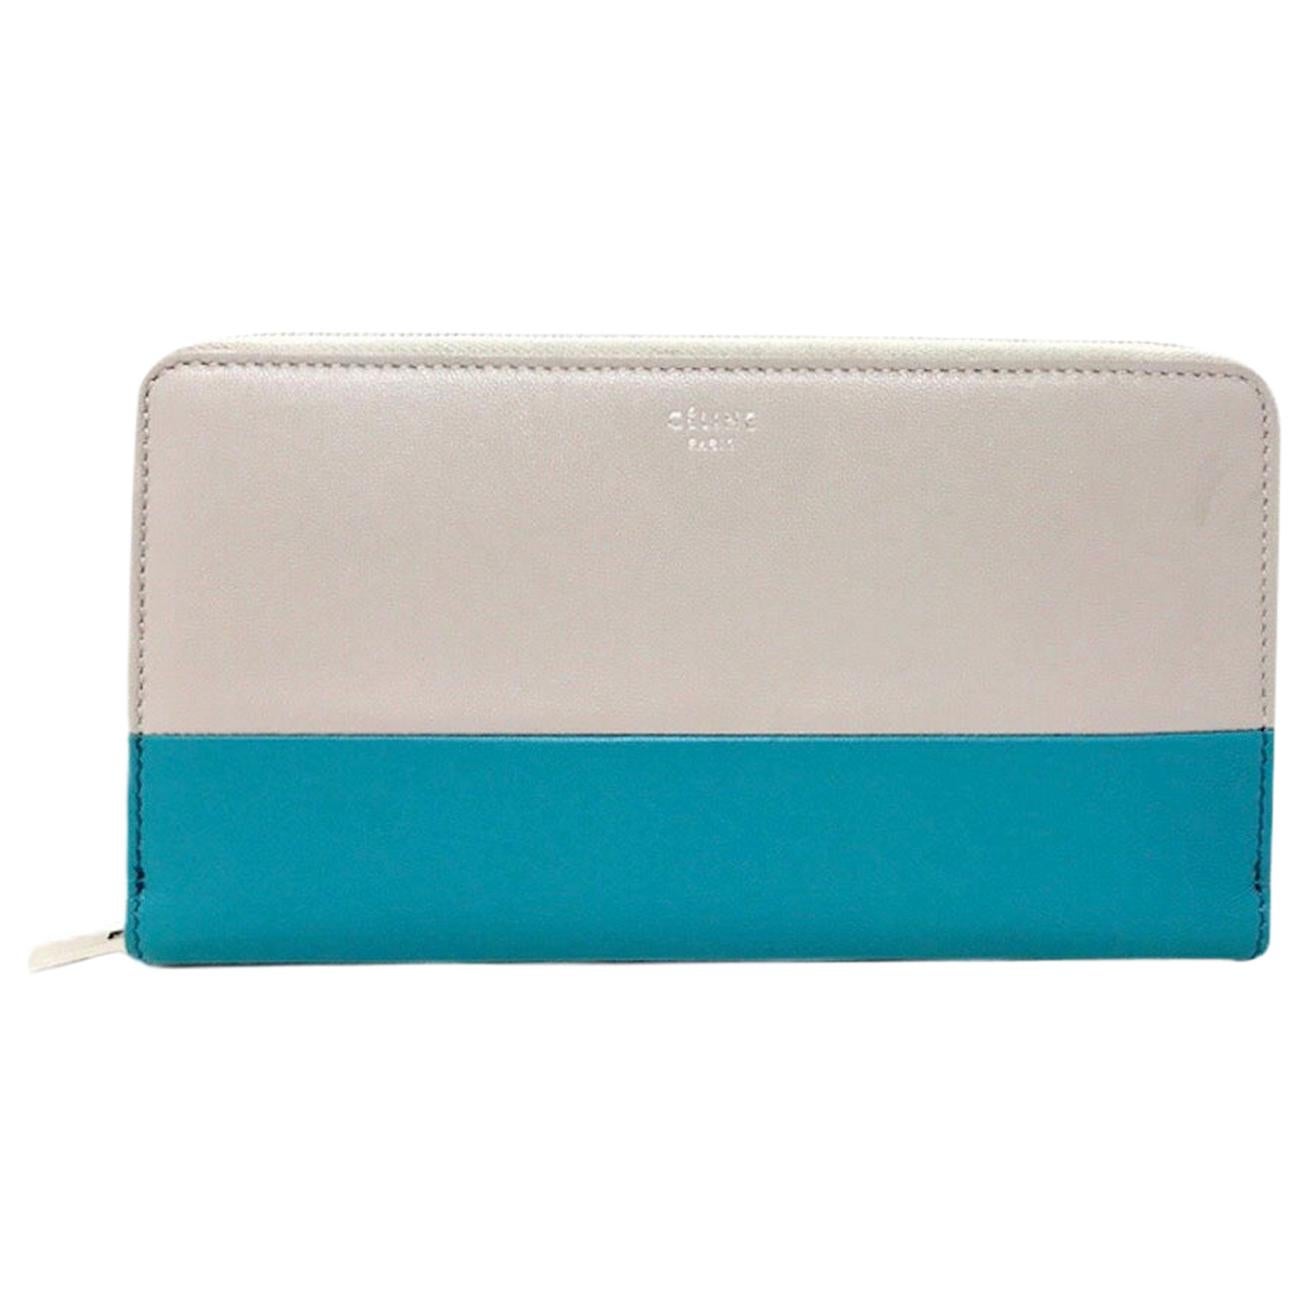 Celine Zippy wallet 2018 For Sale